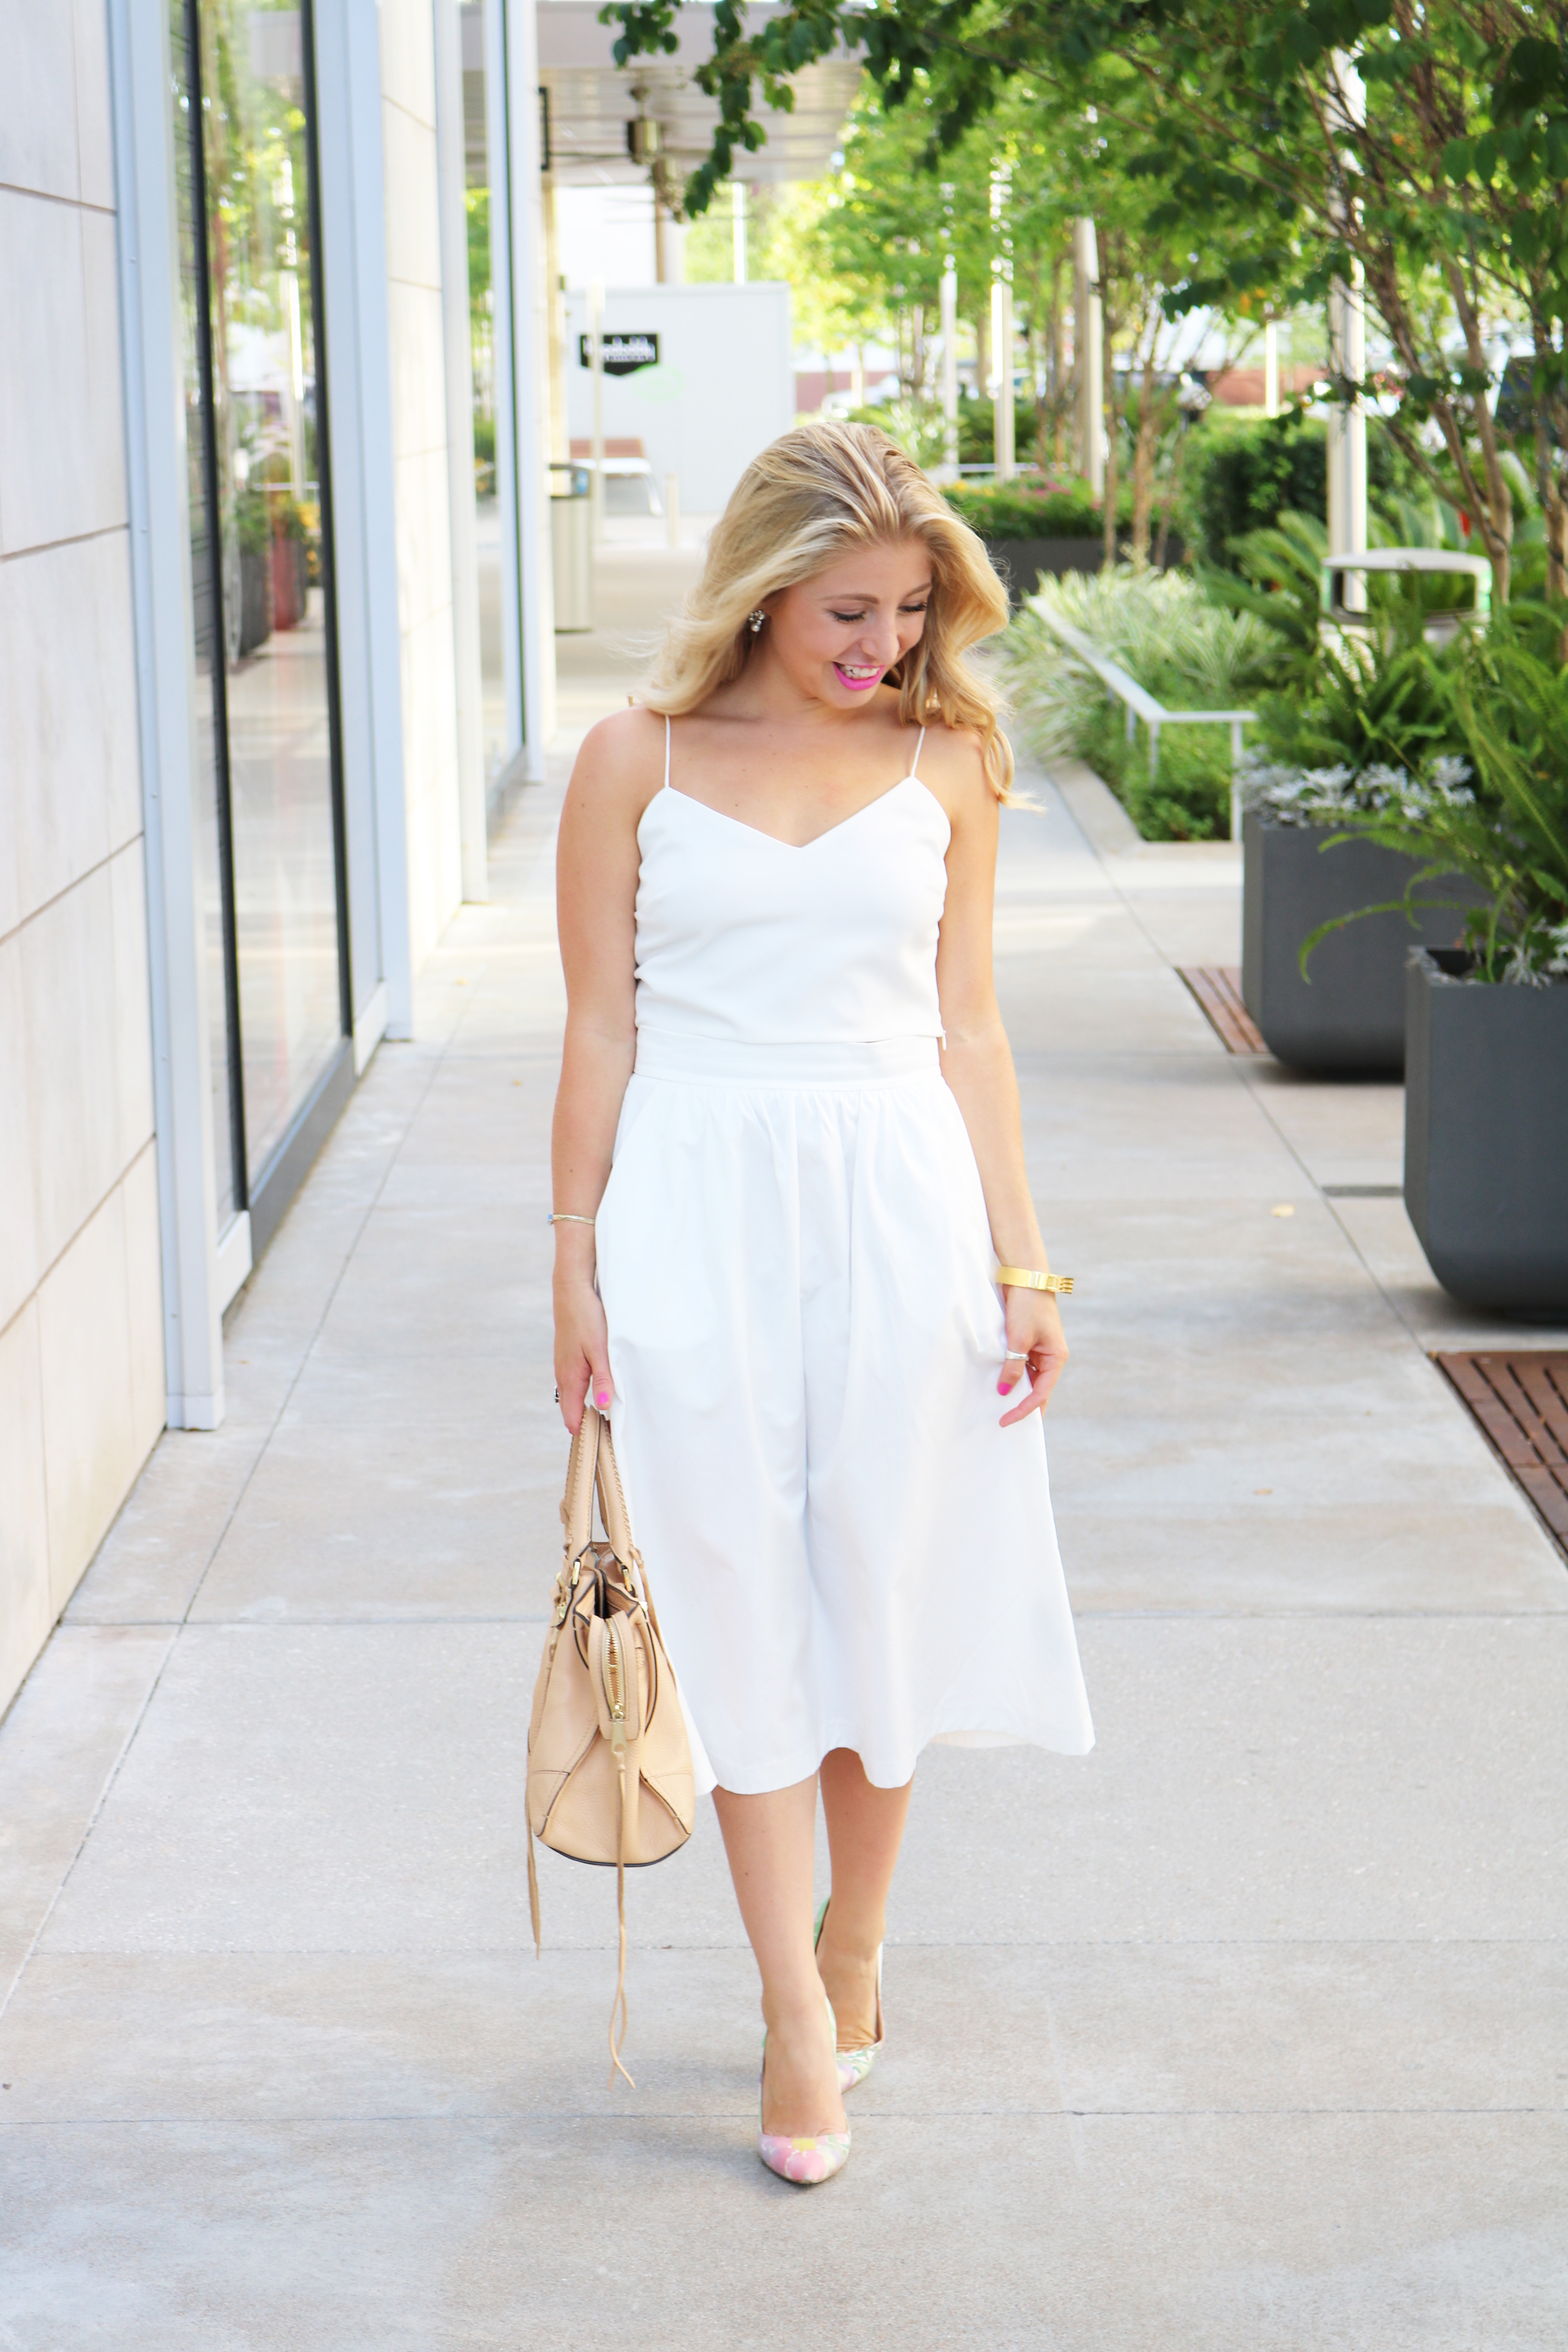 Life-to-lauren-white-dress